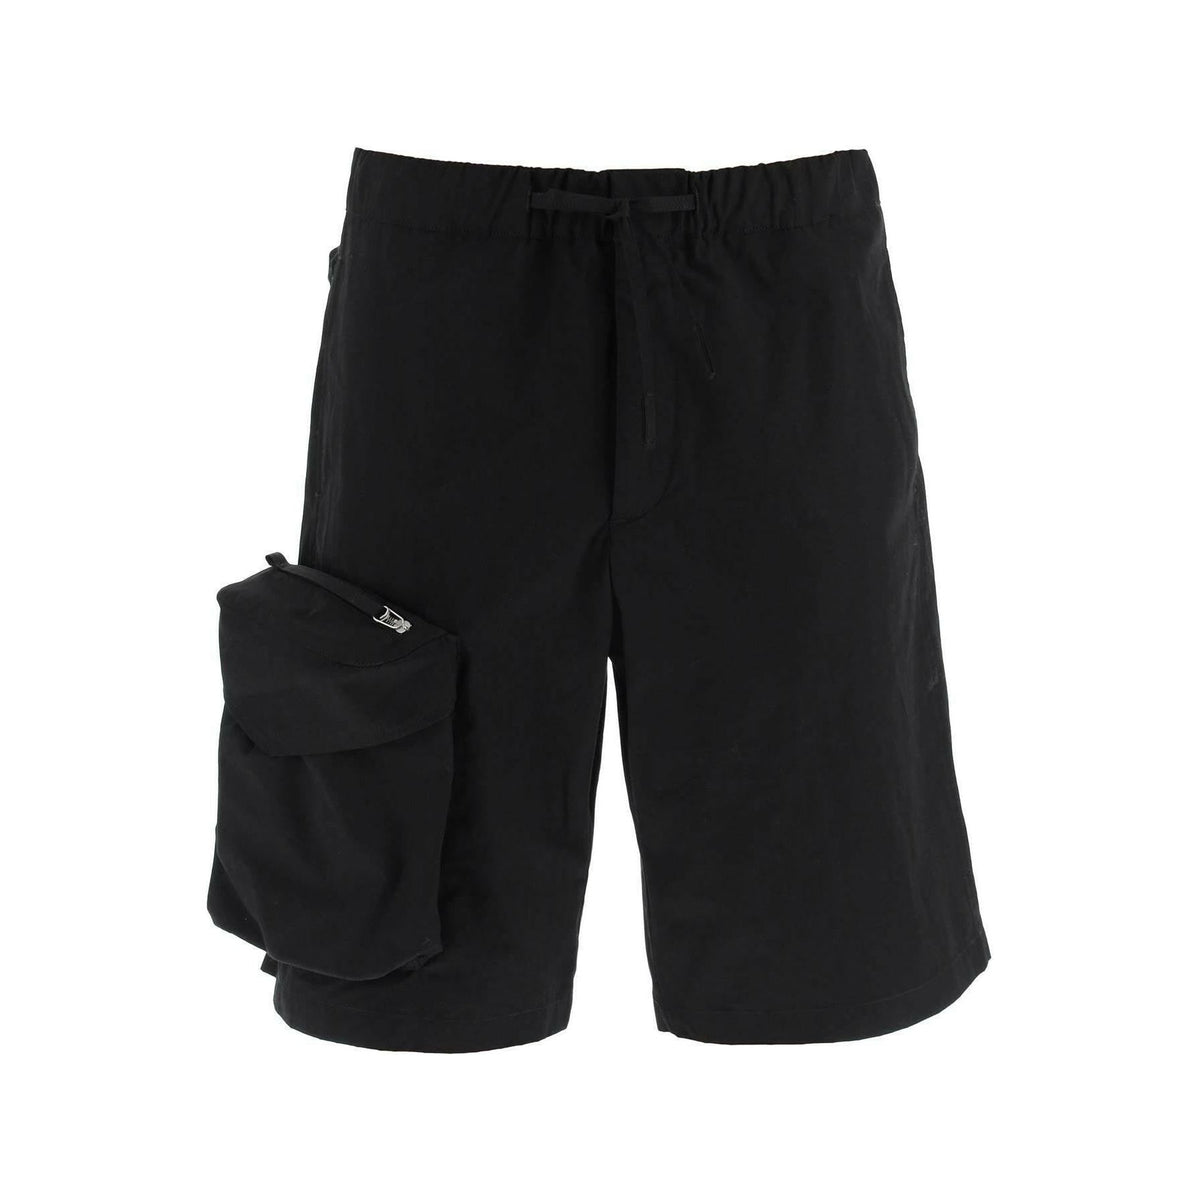 Oversized Shorts With Maxi Pockets OAMC JOHN JULIA.